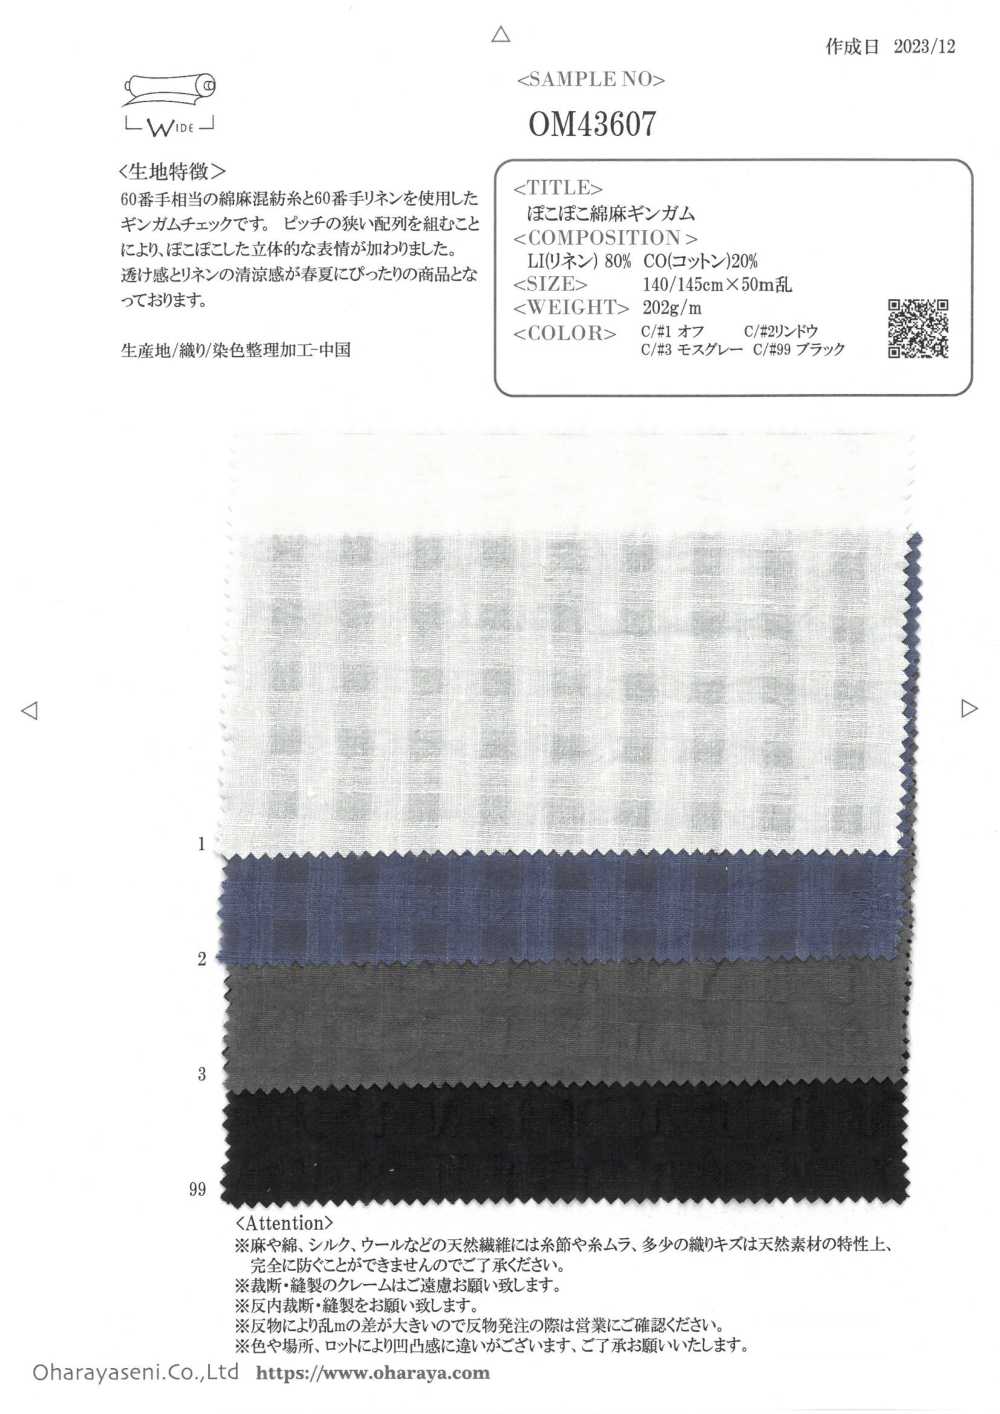 OM43607 Leinen-Gingham In Mohnfarben[Textilgewebe] Oharayaseni